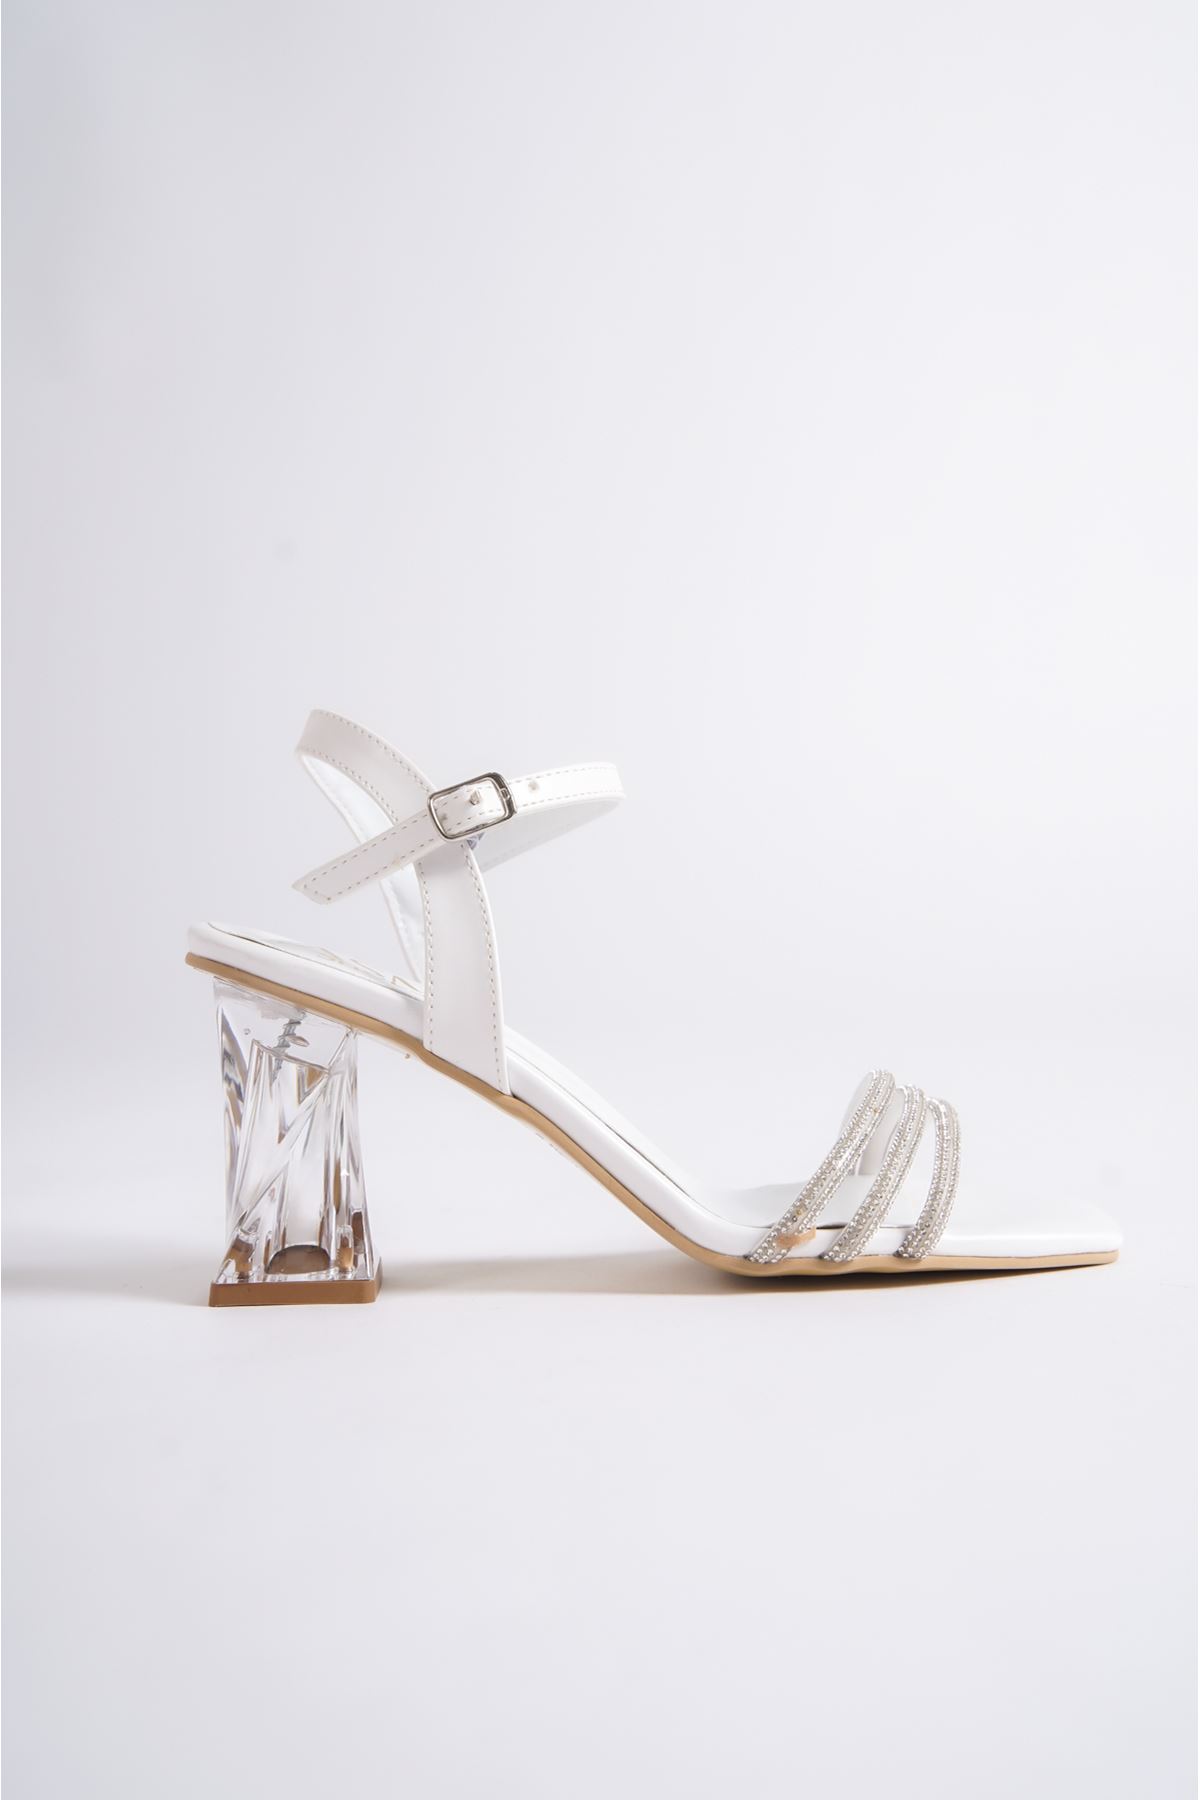 Stephan Beyaz Taşlı Şeffaf Topuklu Kadın Ayakkabı